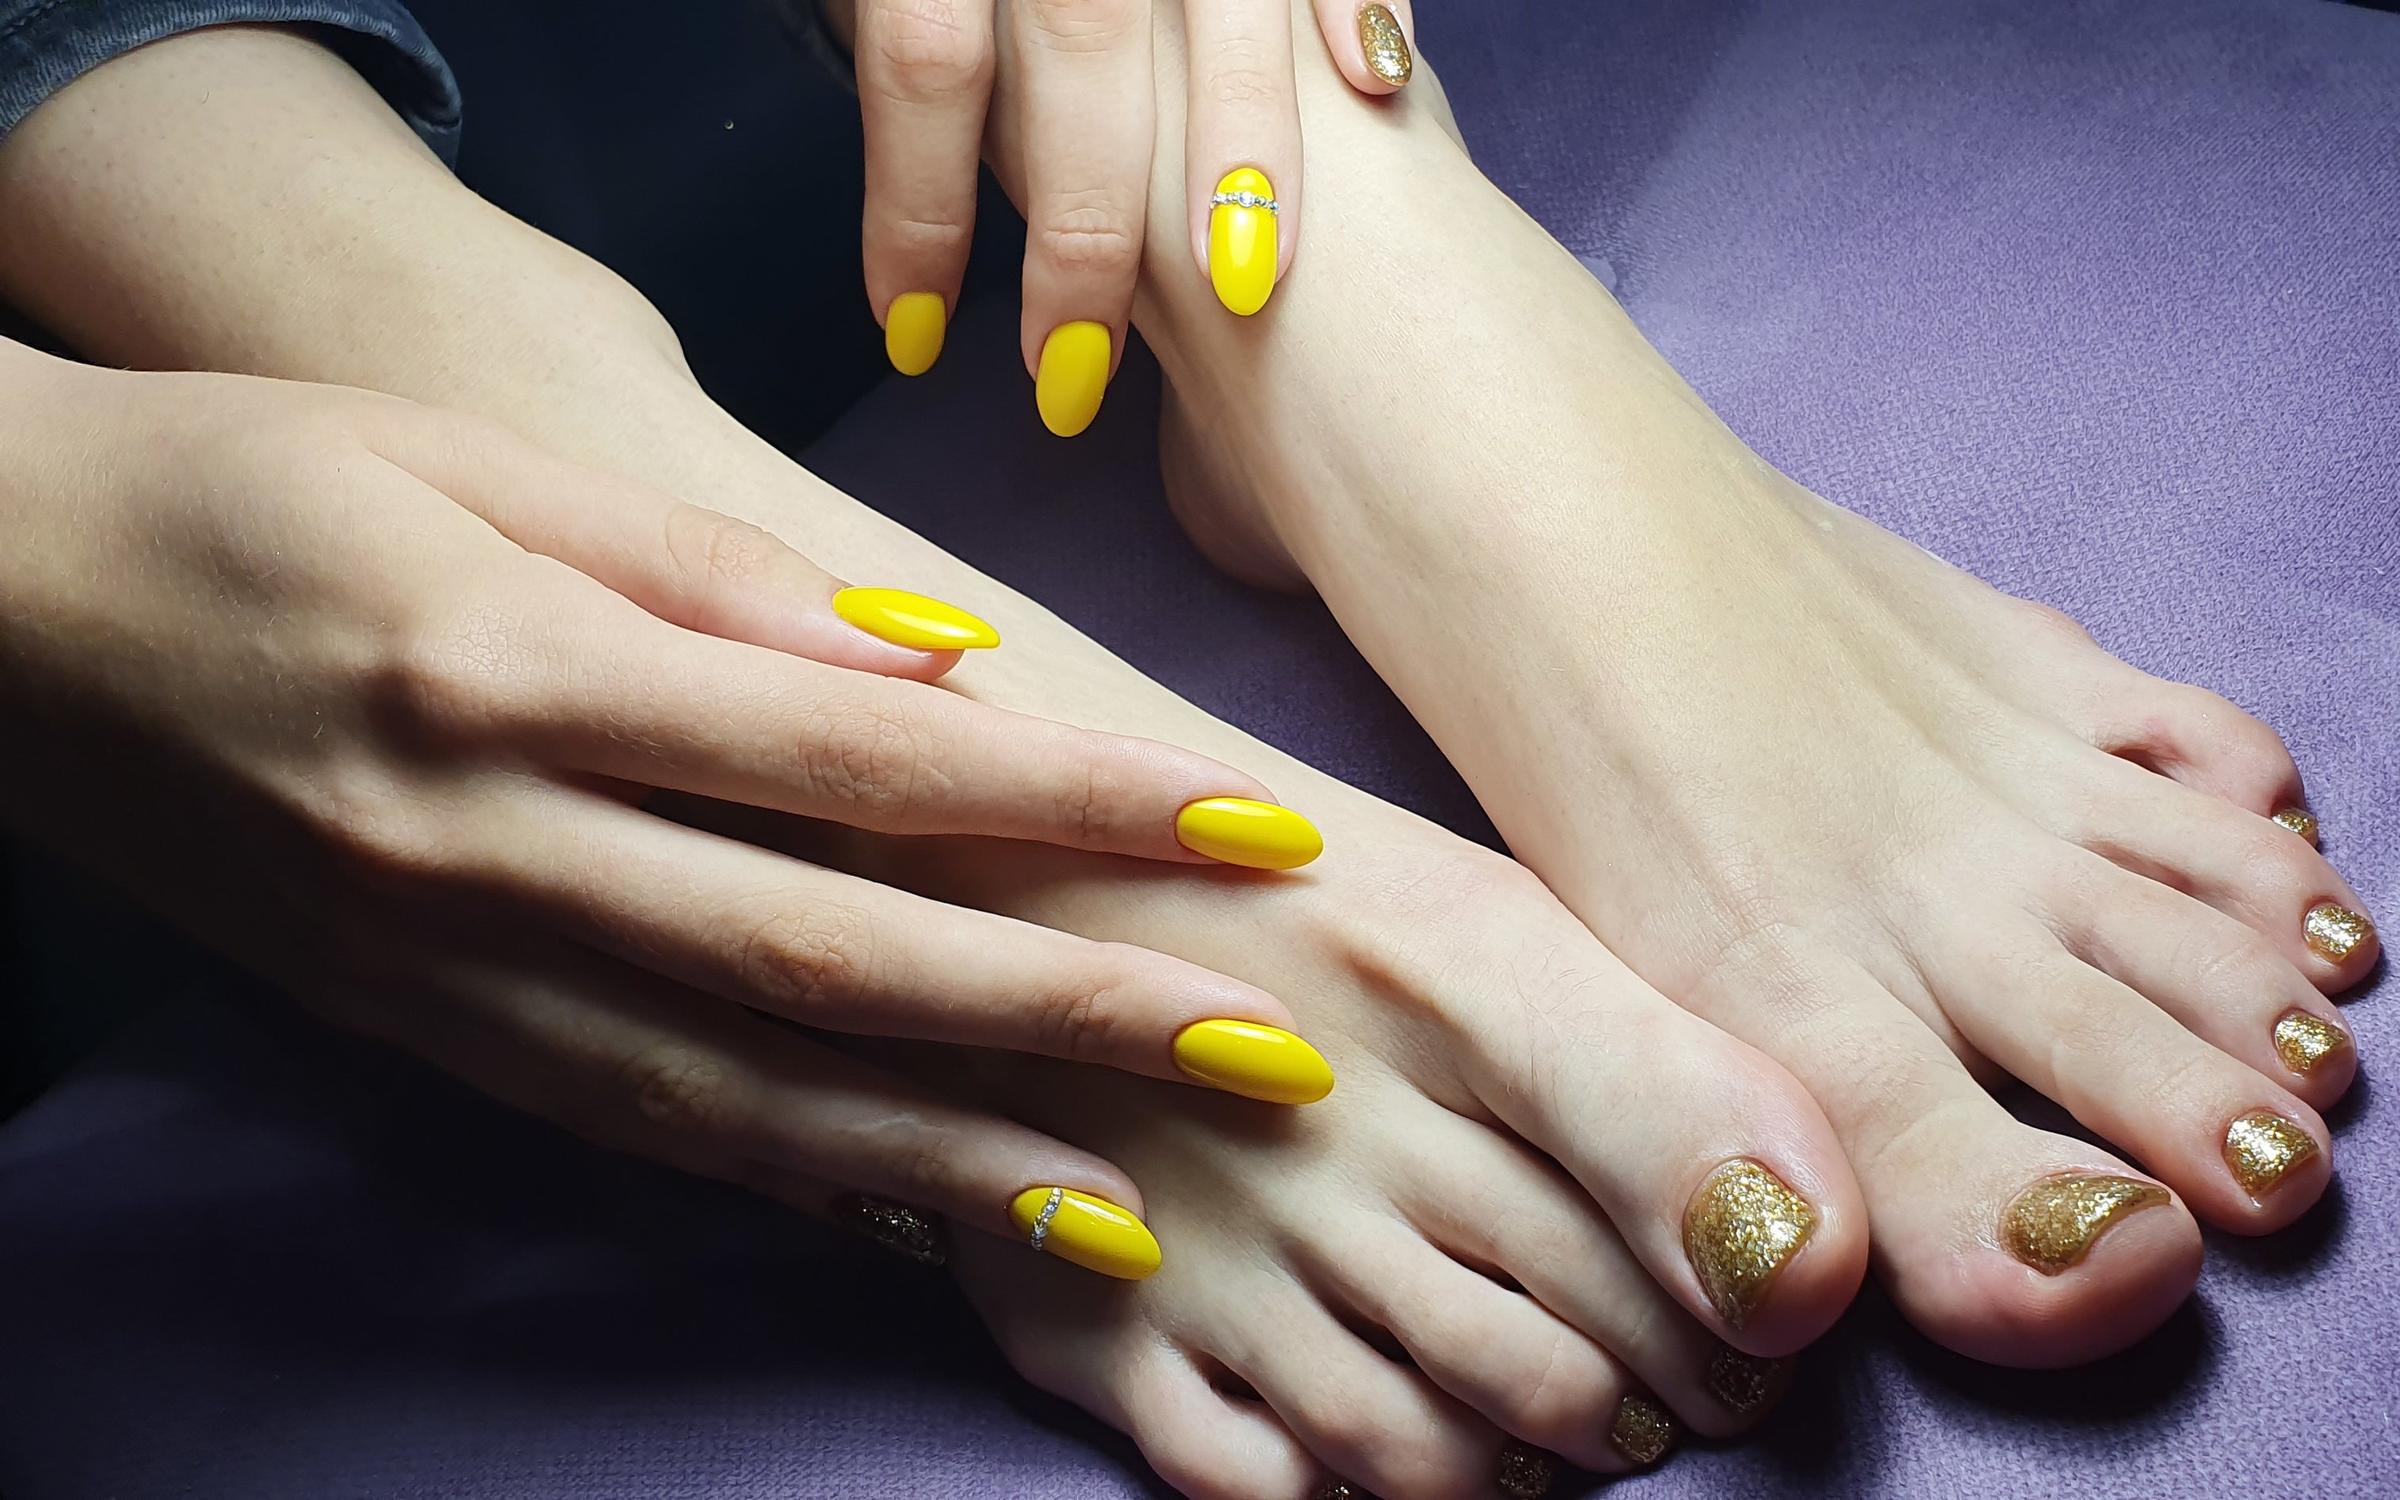 Желтый педикюр. Желтый маникюр и педикюр. Педикюр жёлтый дизайн. Ногти на ногах желтого цвета. Педикюр лимонного цвета.